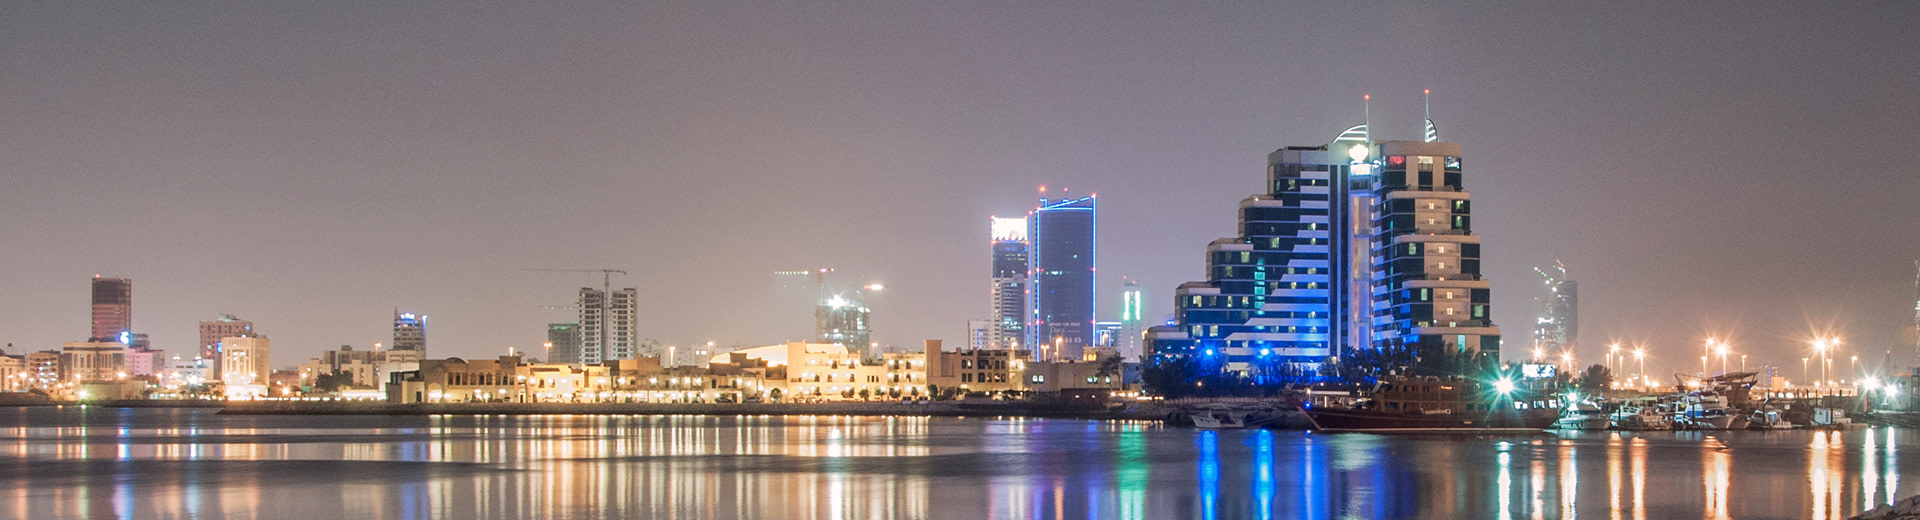 El impresionante horizonte de Muharraq por la noche ilumina el área circundante.